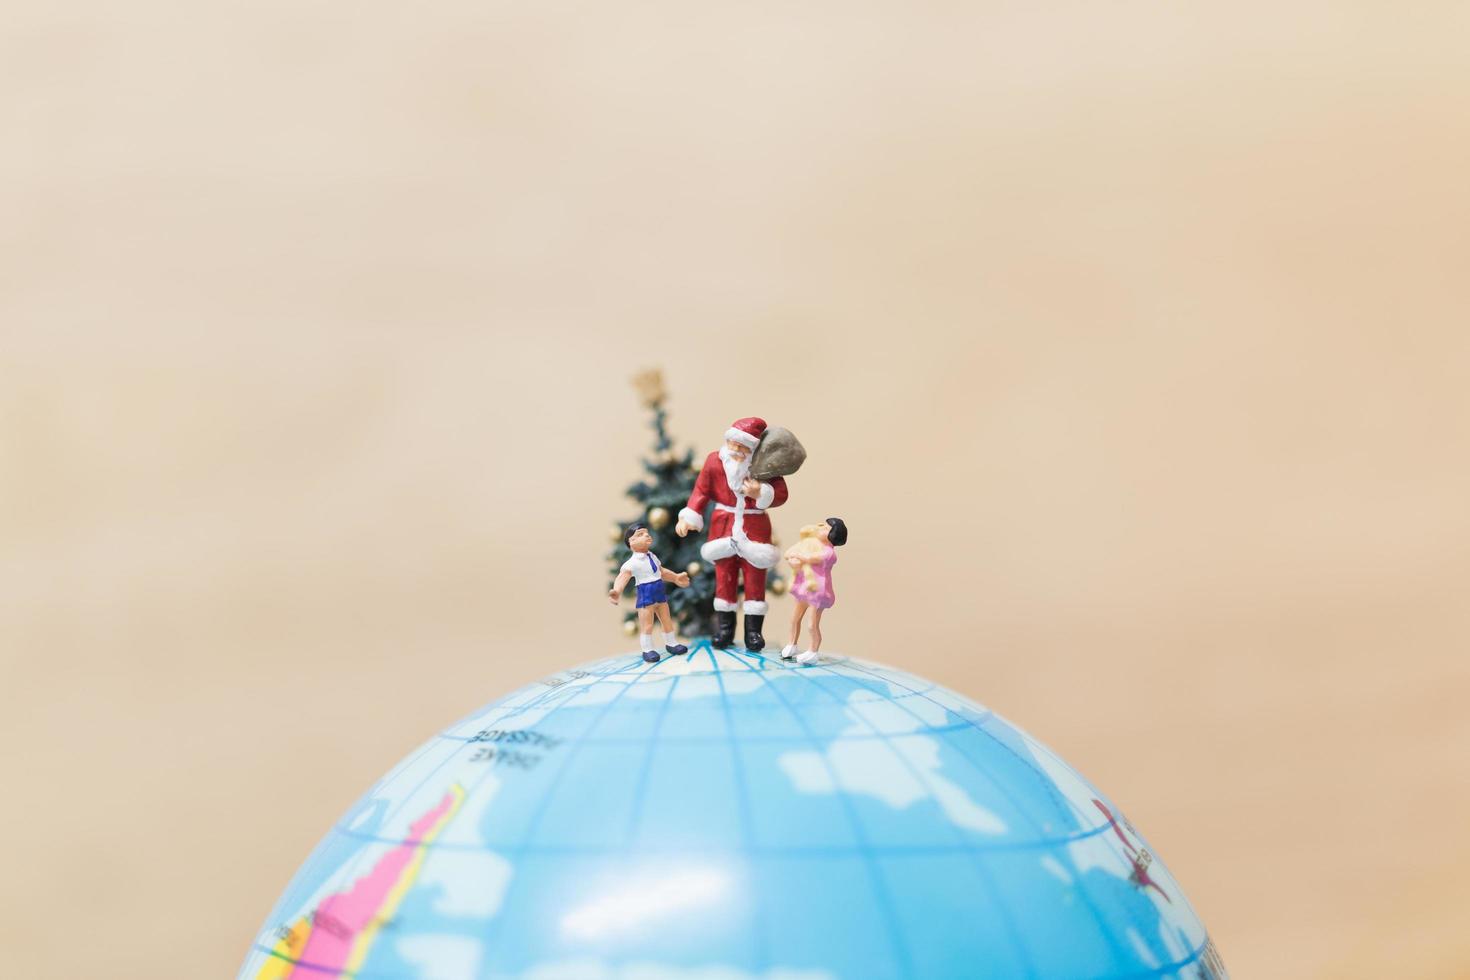 Miniatur-Weihnachtsmann, der Geschenke für Kinder auf einem Globus hält, frohe Weihnachtskonzept foto